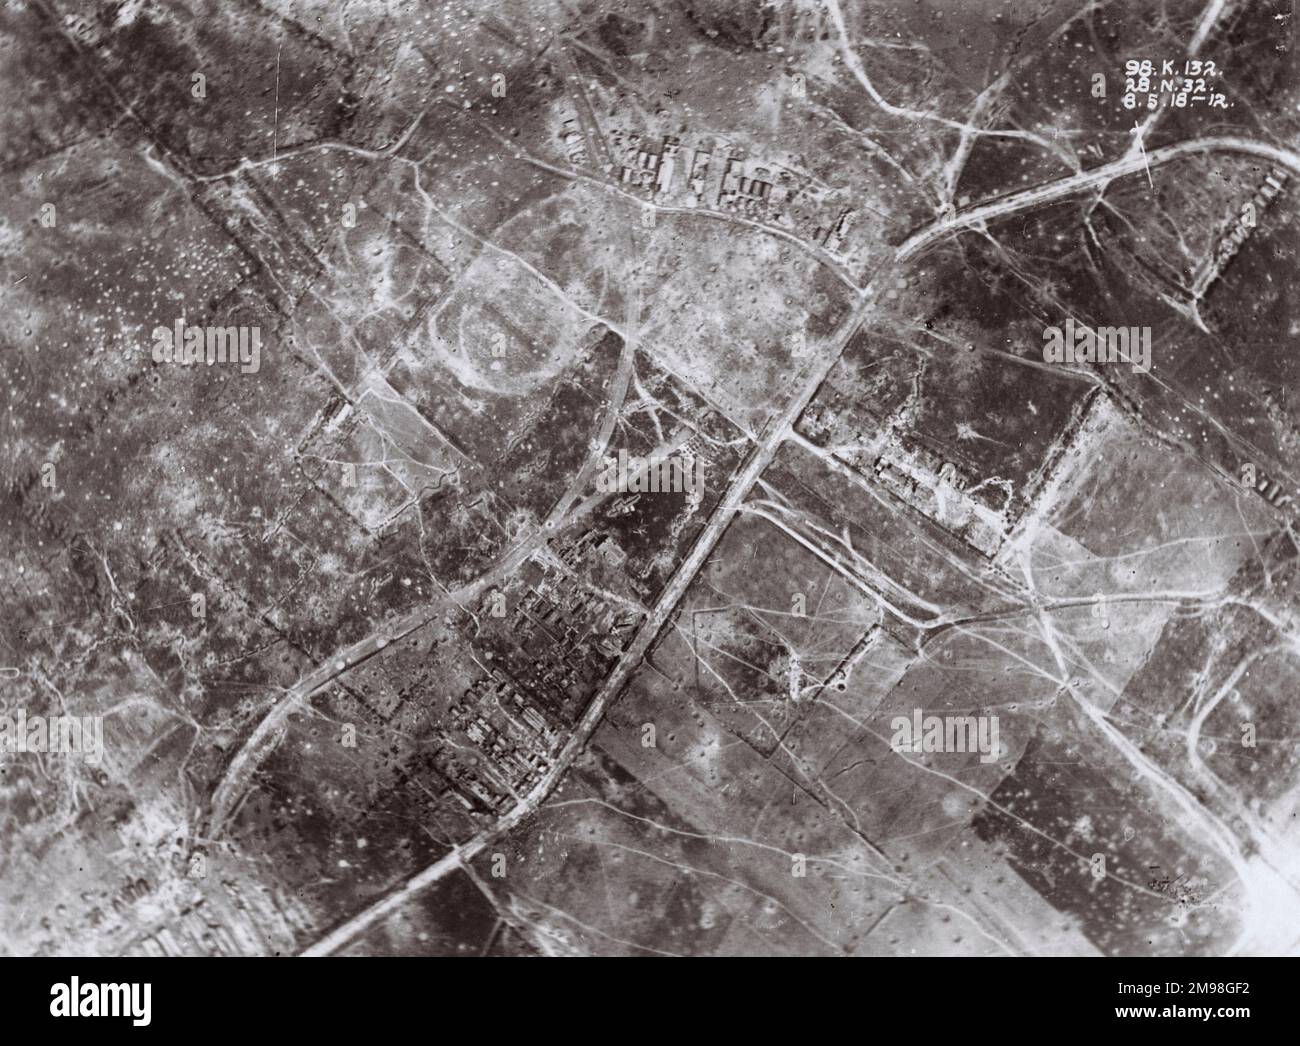 Luftaufnahme eines Muschelgebiets südlich von Kemmel, einem Gebiet in der Nähe von Ypern, Westflandern, Belgien, am 8. Mai 1918. Stockfoto